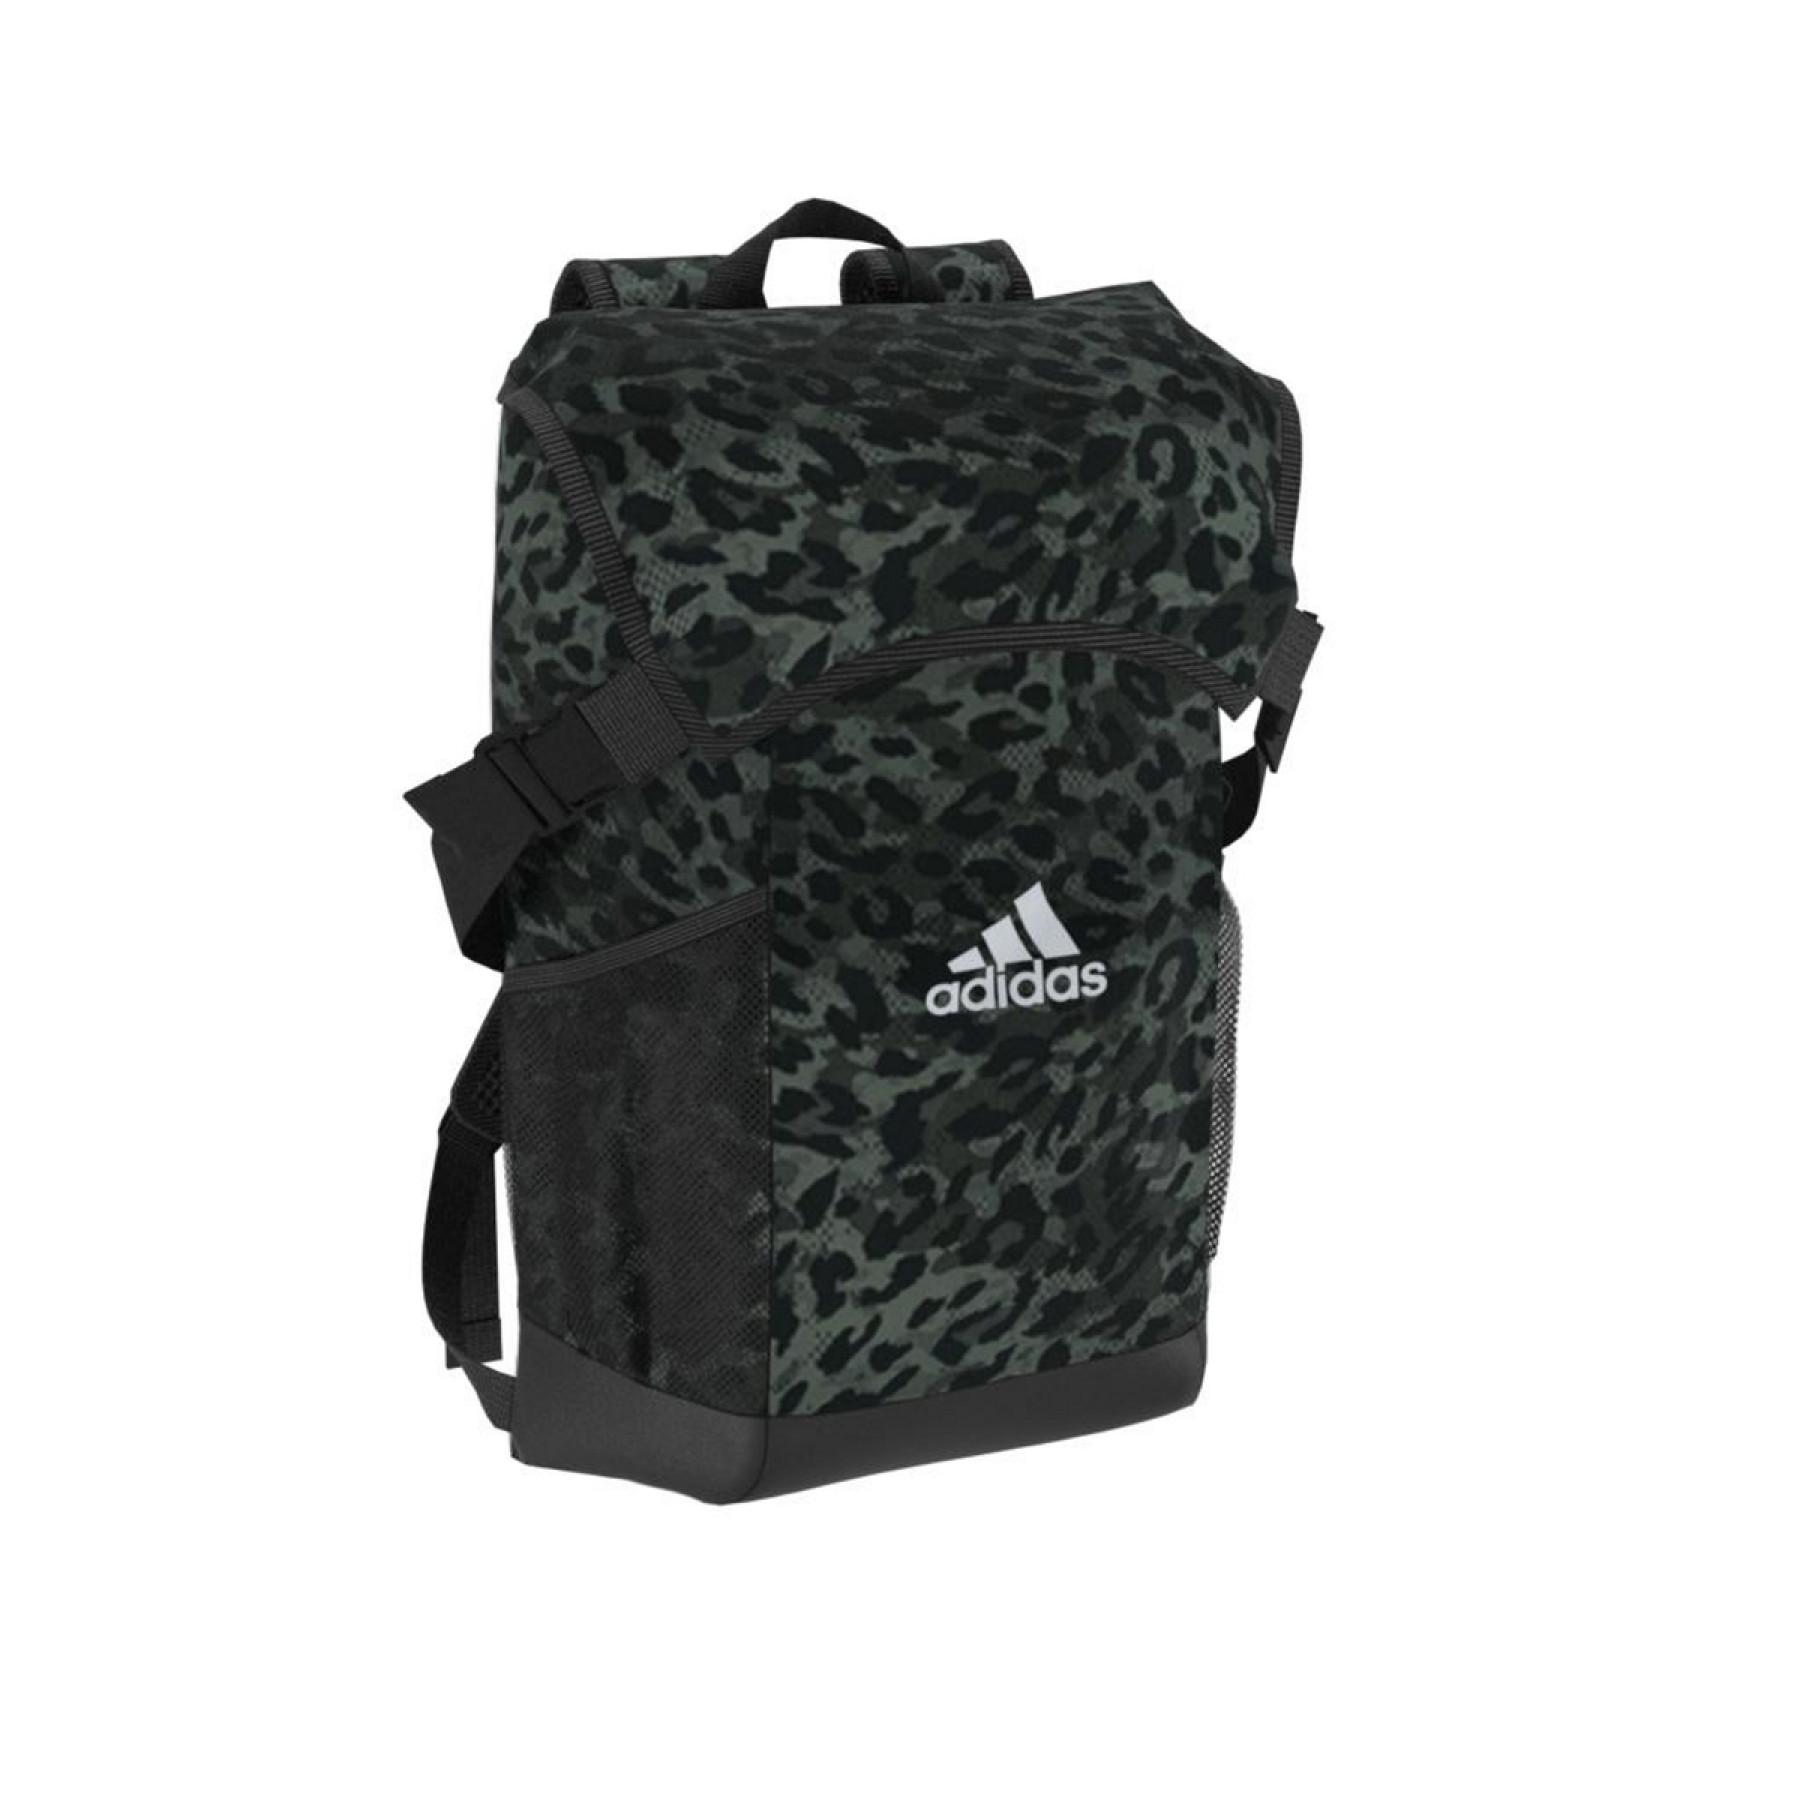 Backpack adidas 4 Athlts